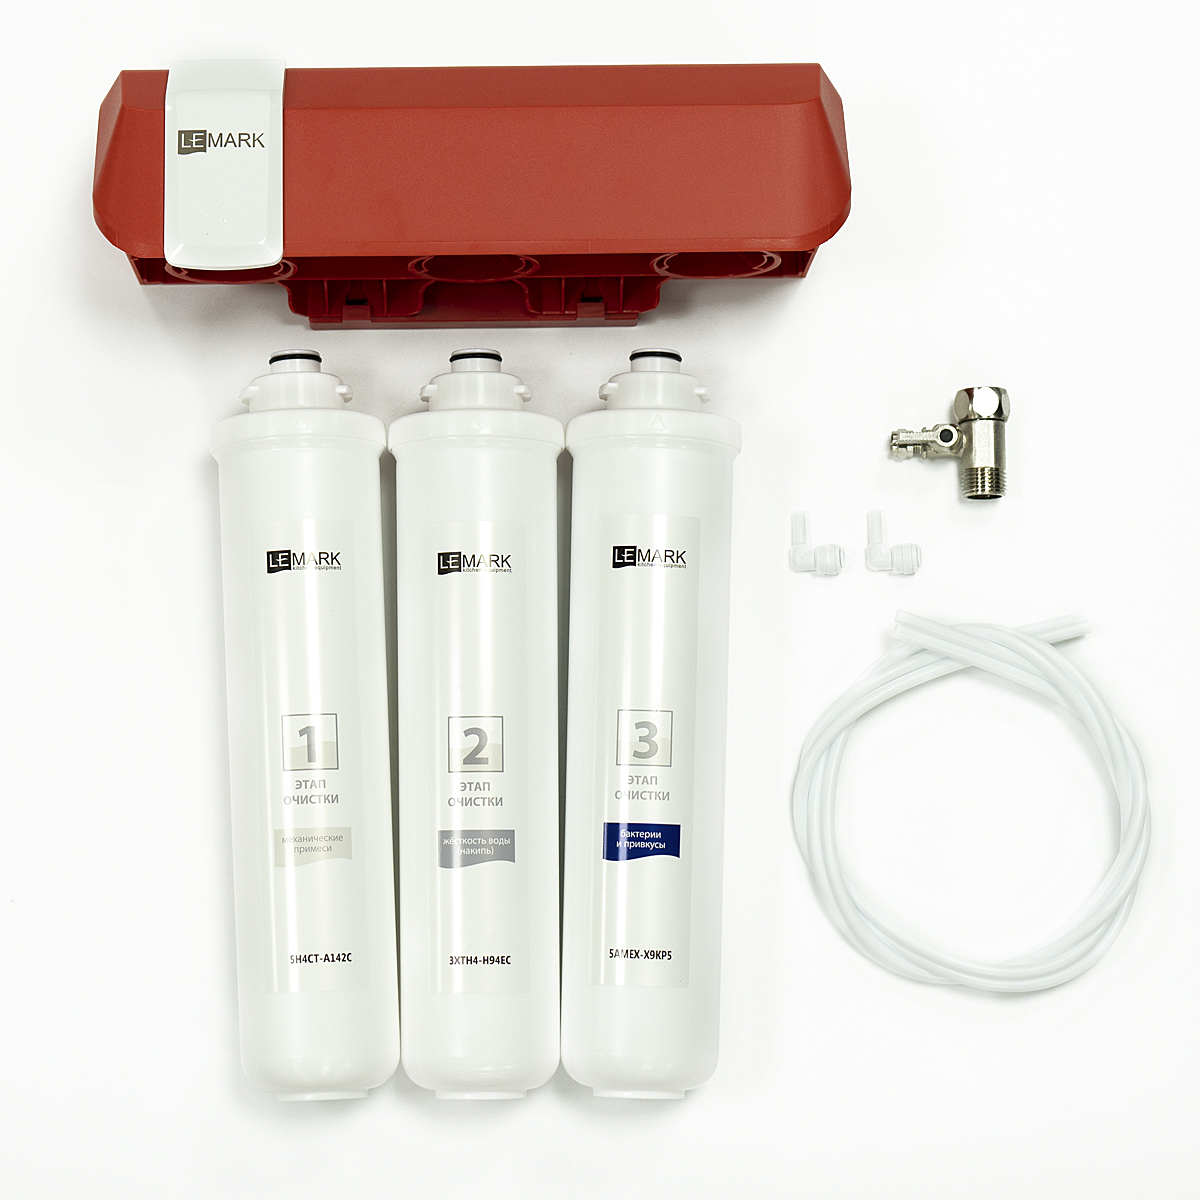 Фильтр Lemark BIO для очистки воды от соли жесткости (накипь), бактерий, хлора и привкусов (9920087) - фото 3